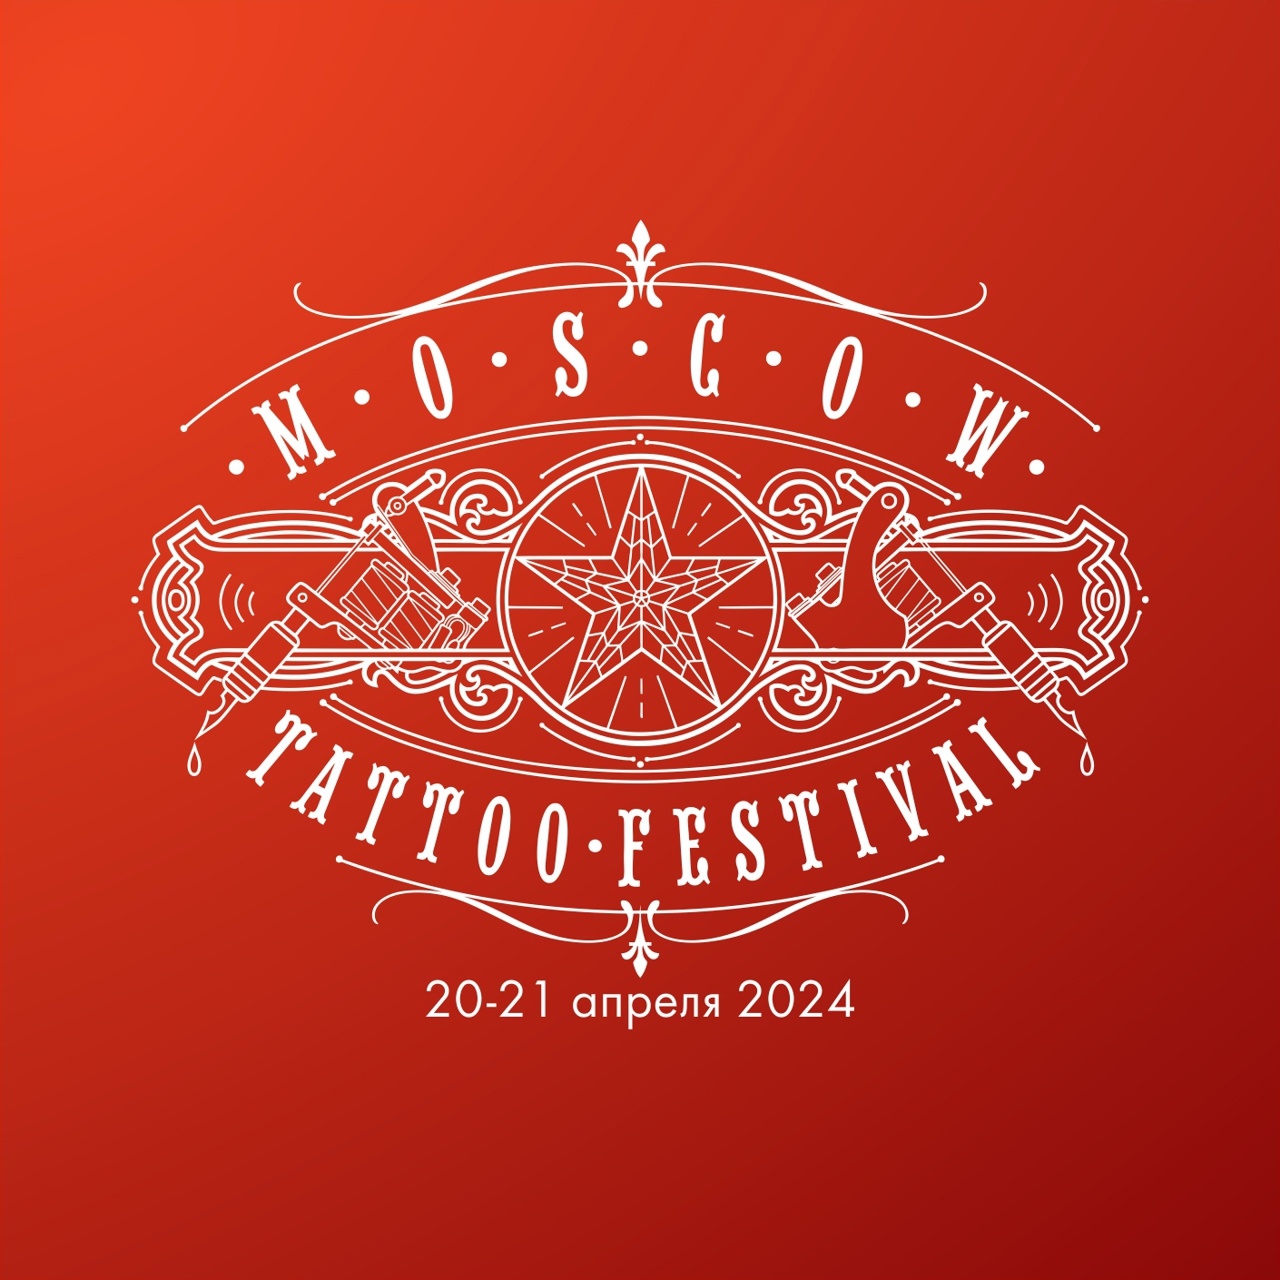 Безопасность на Московском Фестивале